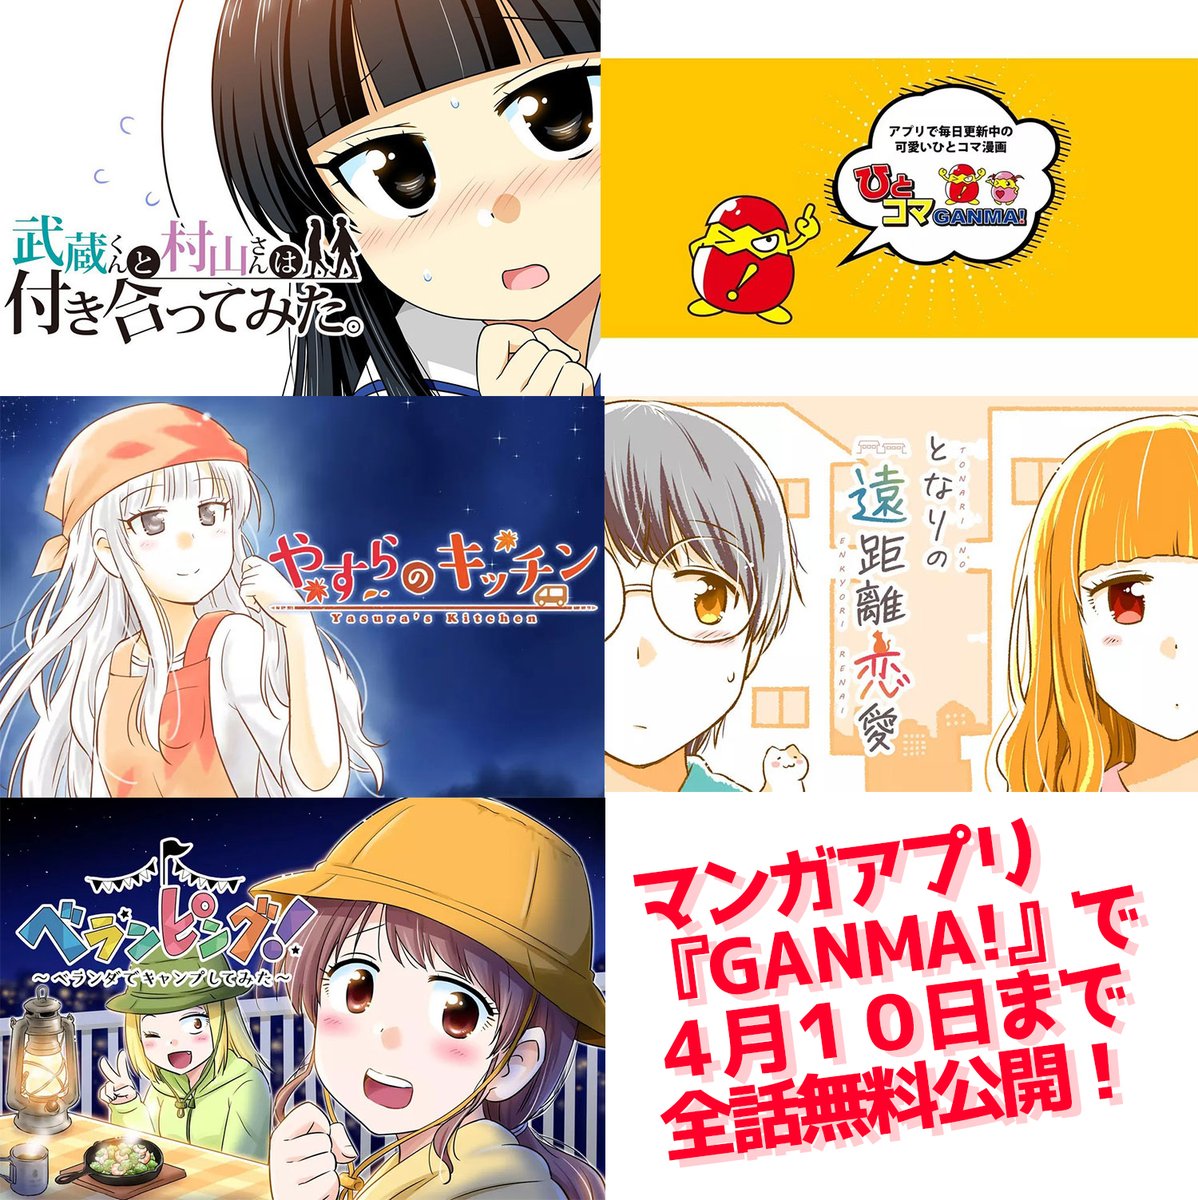 マンガアプリ『GANMA!』で4月10日まで
全話無料公開になりました!!
(※いつもは5話まで)#GANMA
↓
・「ひとコマGANMA!」
・「武蔵くんと村山さんは付き合ってみた。 
・「やすらのキッチン」 
・「となりの遠距離恋愛」
・「ベランピング!～ベランダでキャンプしてみた～」 